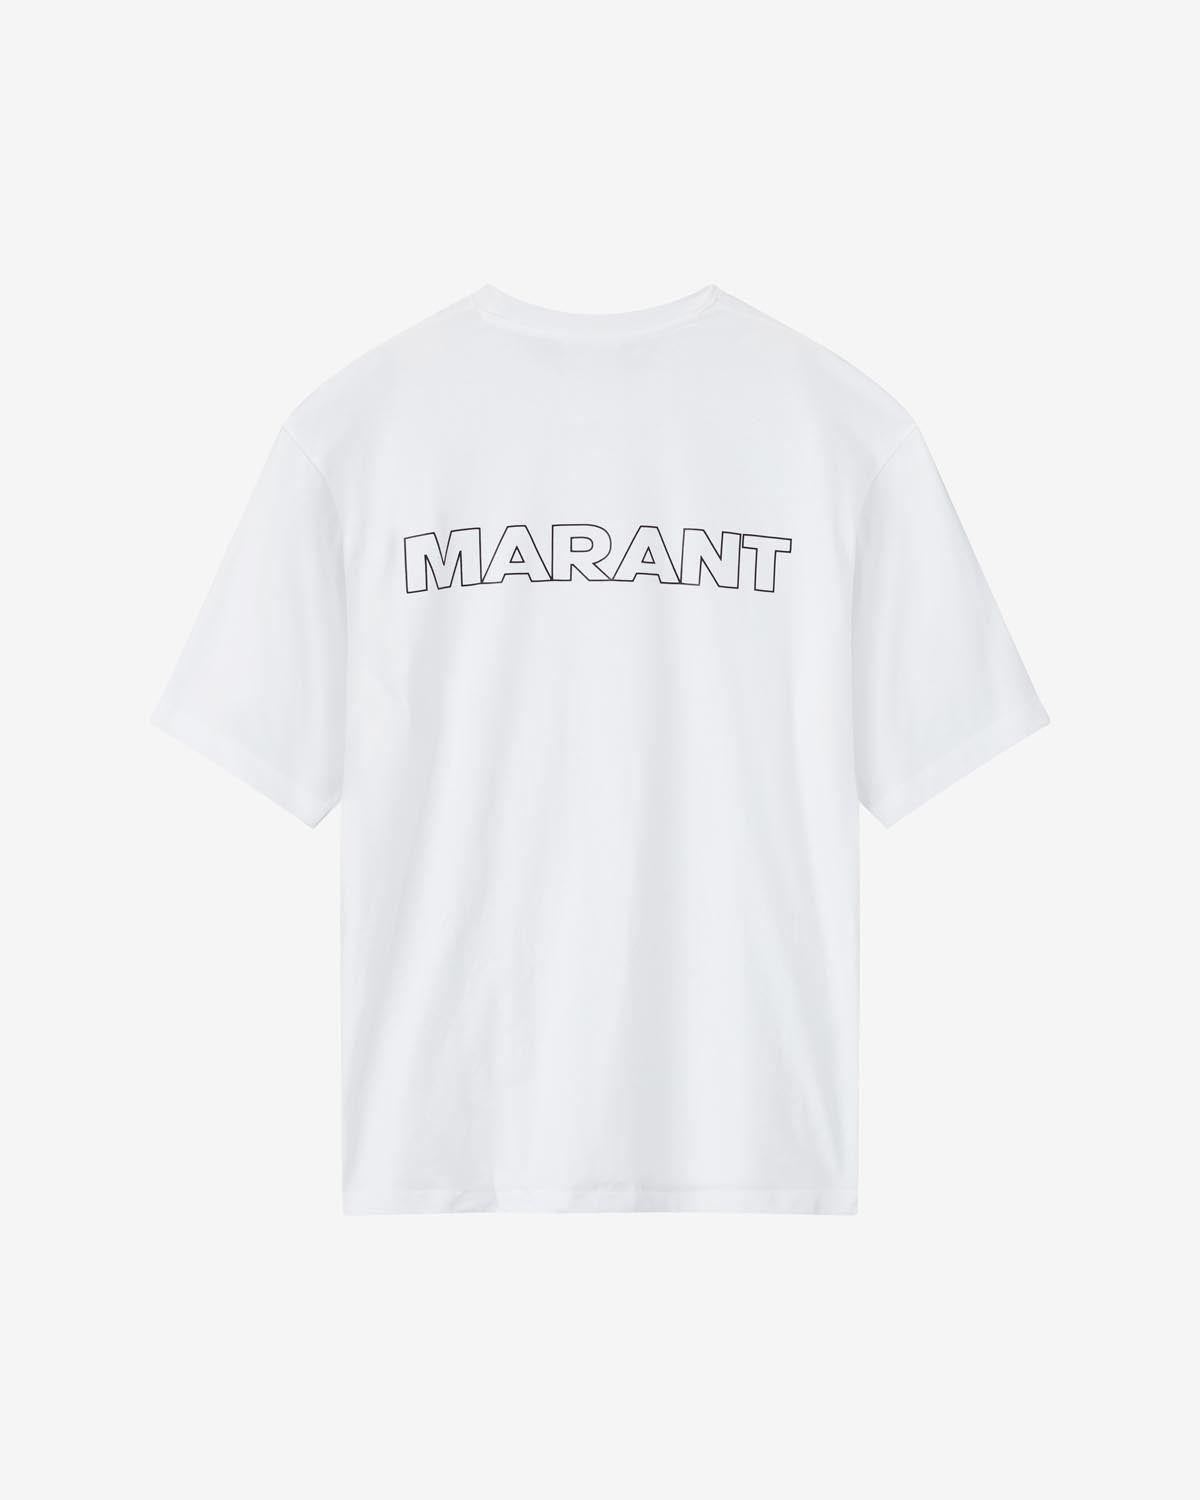 Guizy "marant" コットン tシャツ Man 白 5